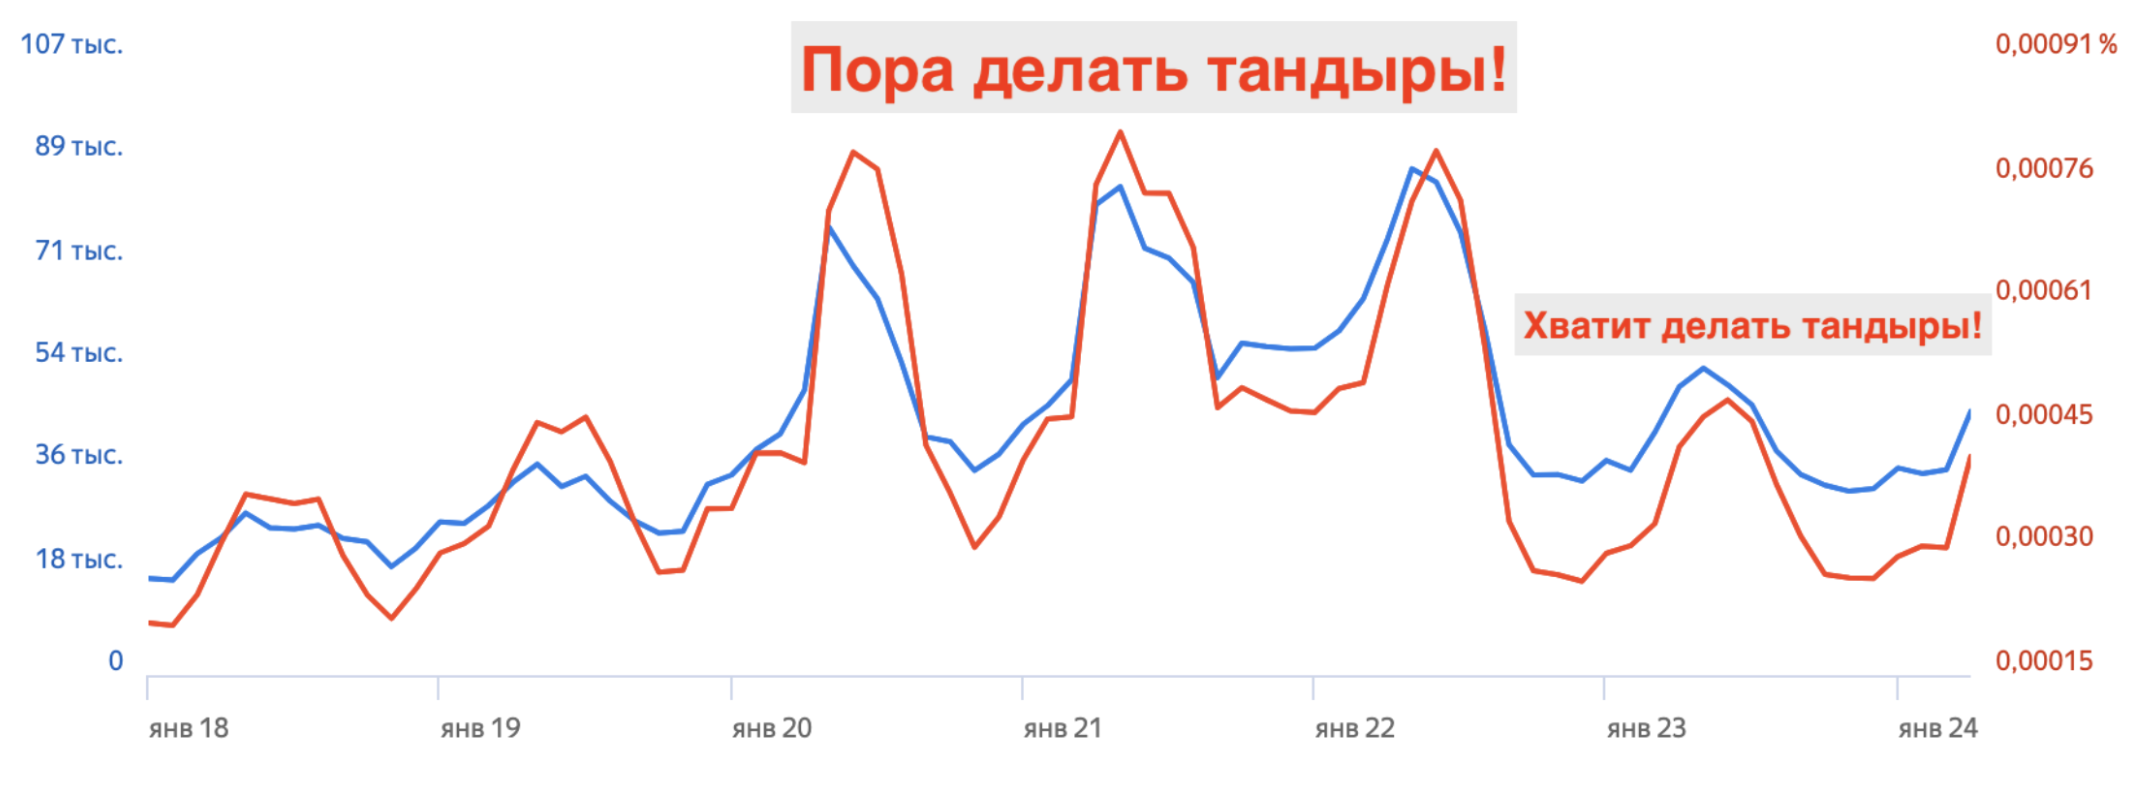 Если посмотреть Яндекс.Вордстат можно увидеть падение в 2,5 раза.